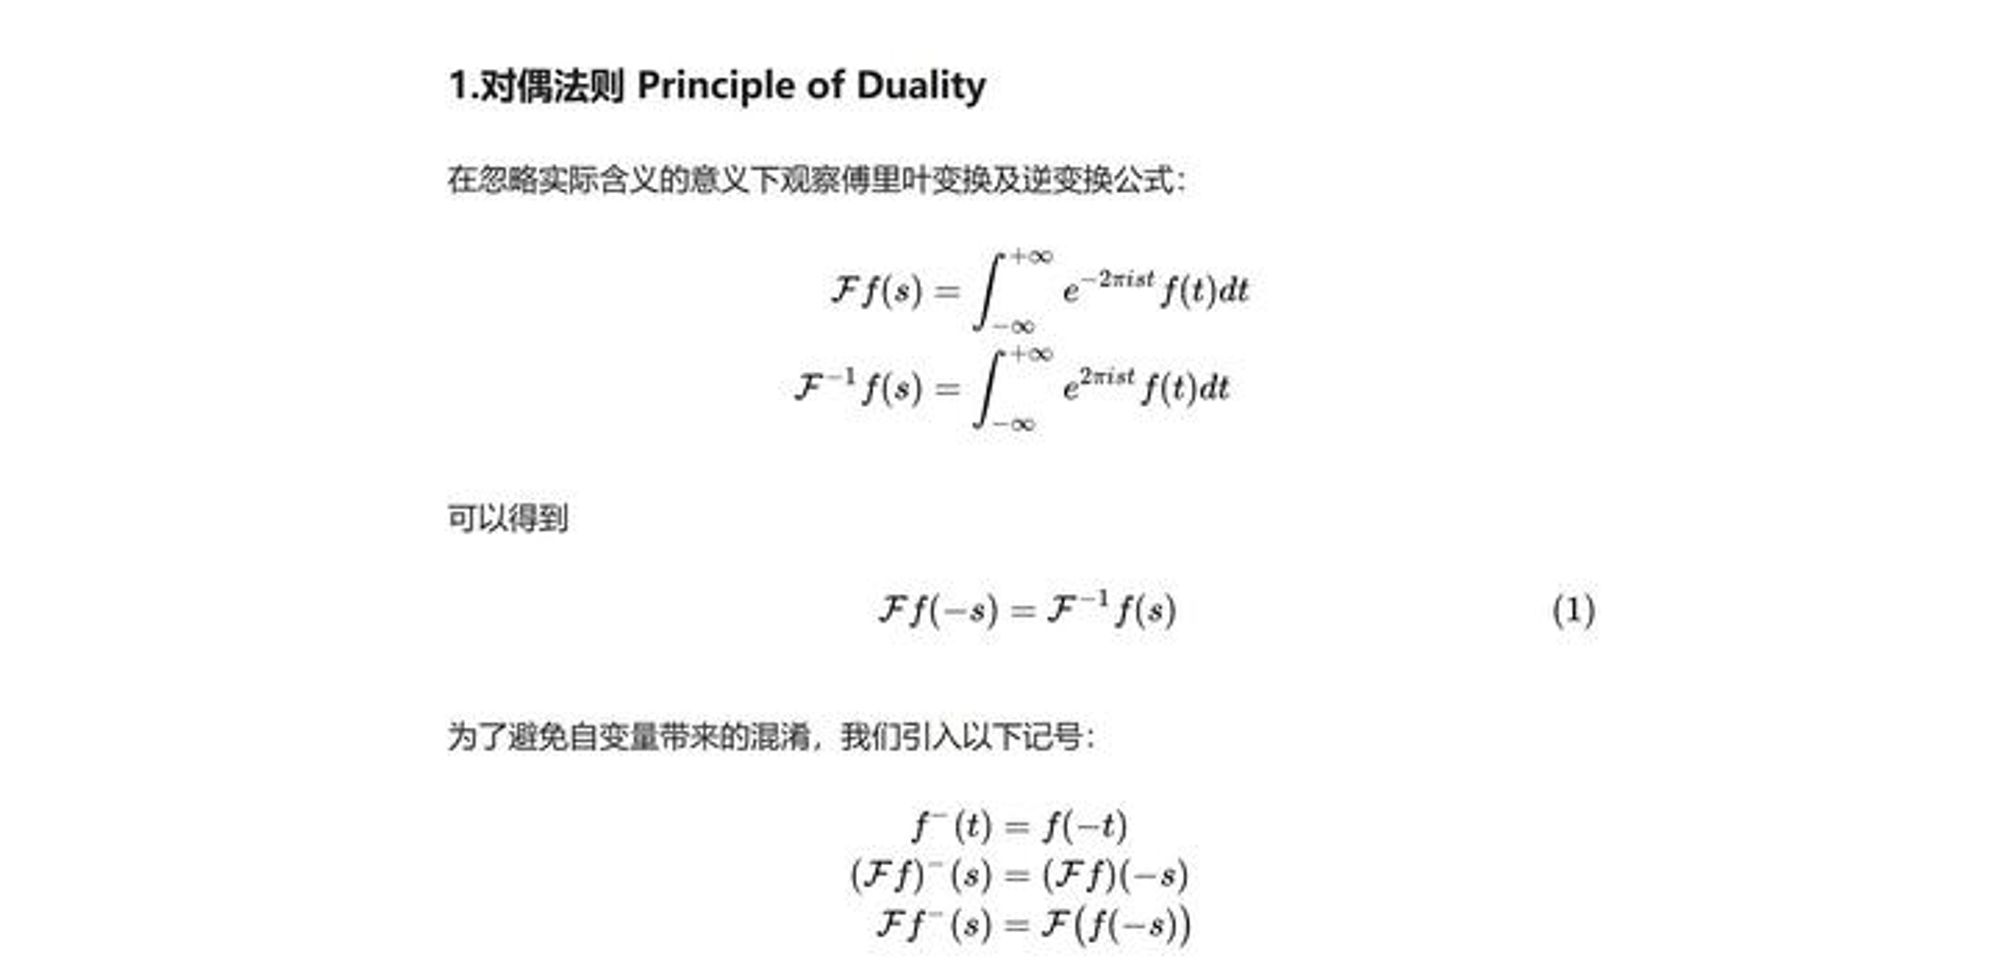 傅里叶变换学习笔记(4)